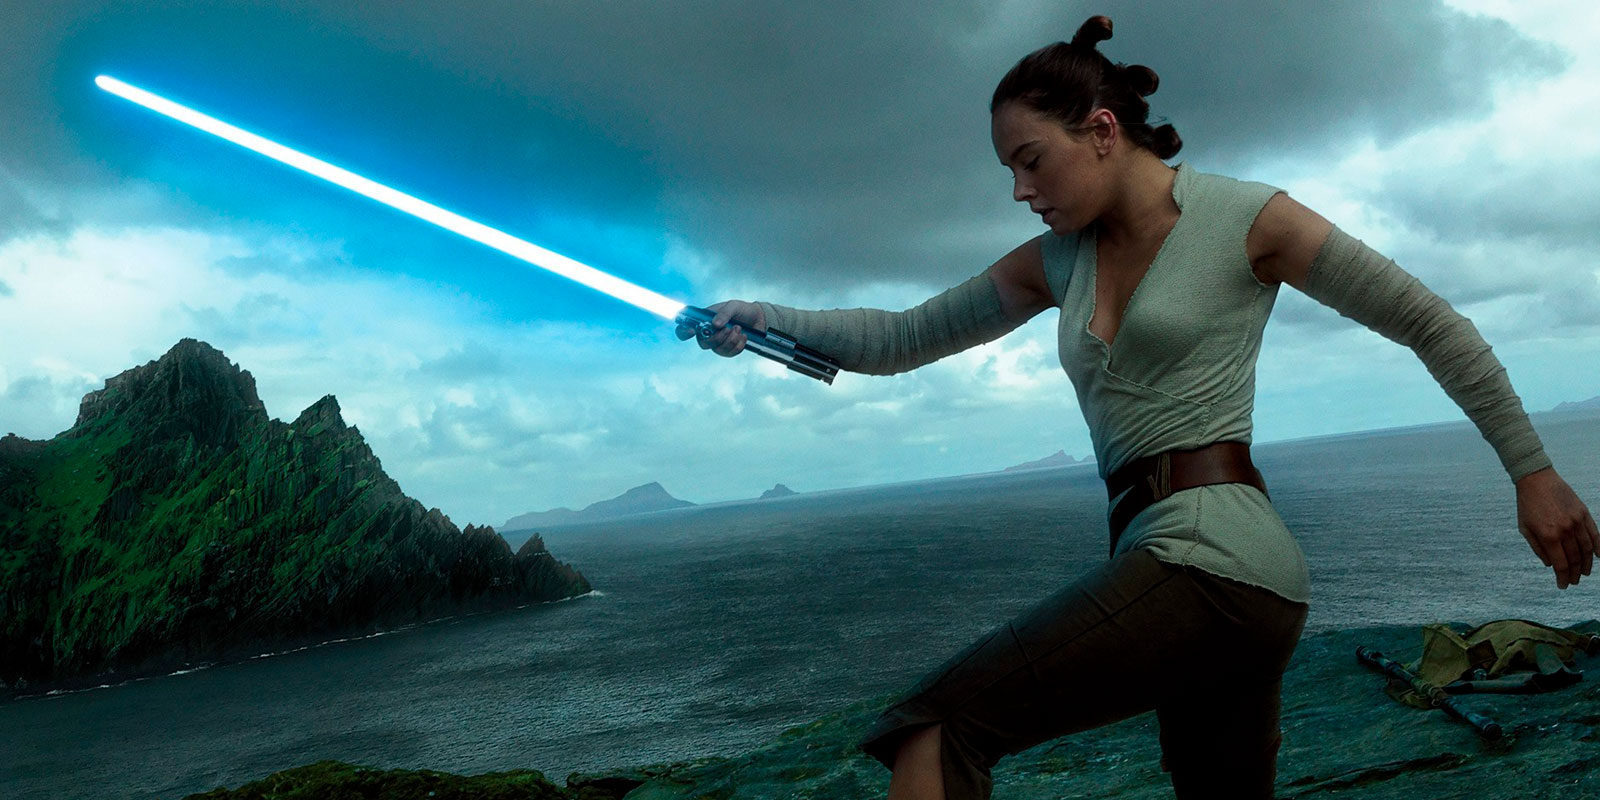 Las primeras impresiones de 'Star Wars: Los últimos Jedi' son muy buenas